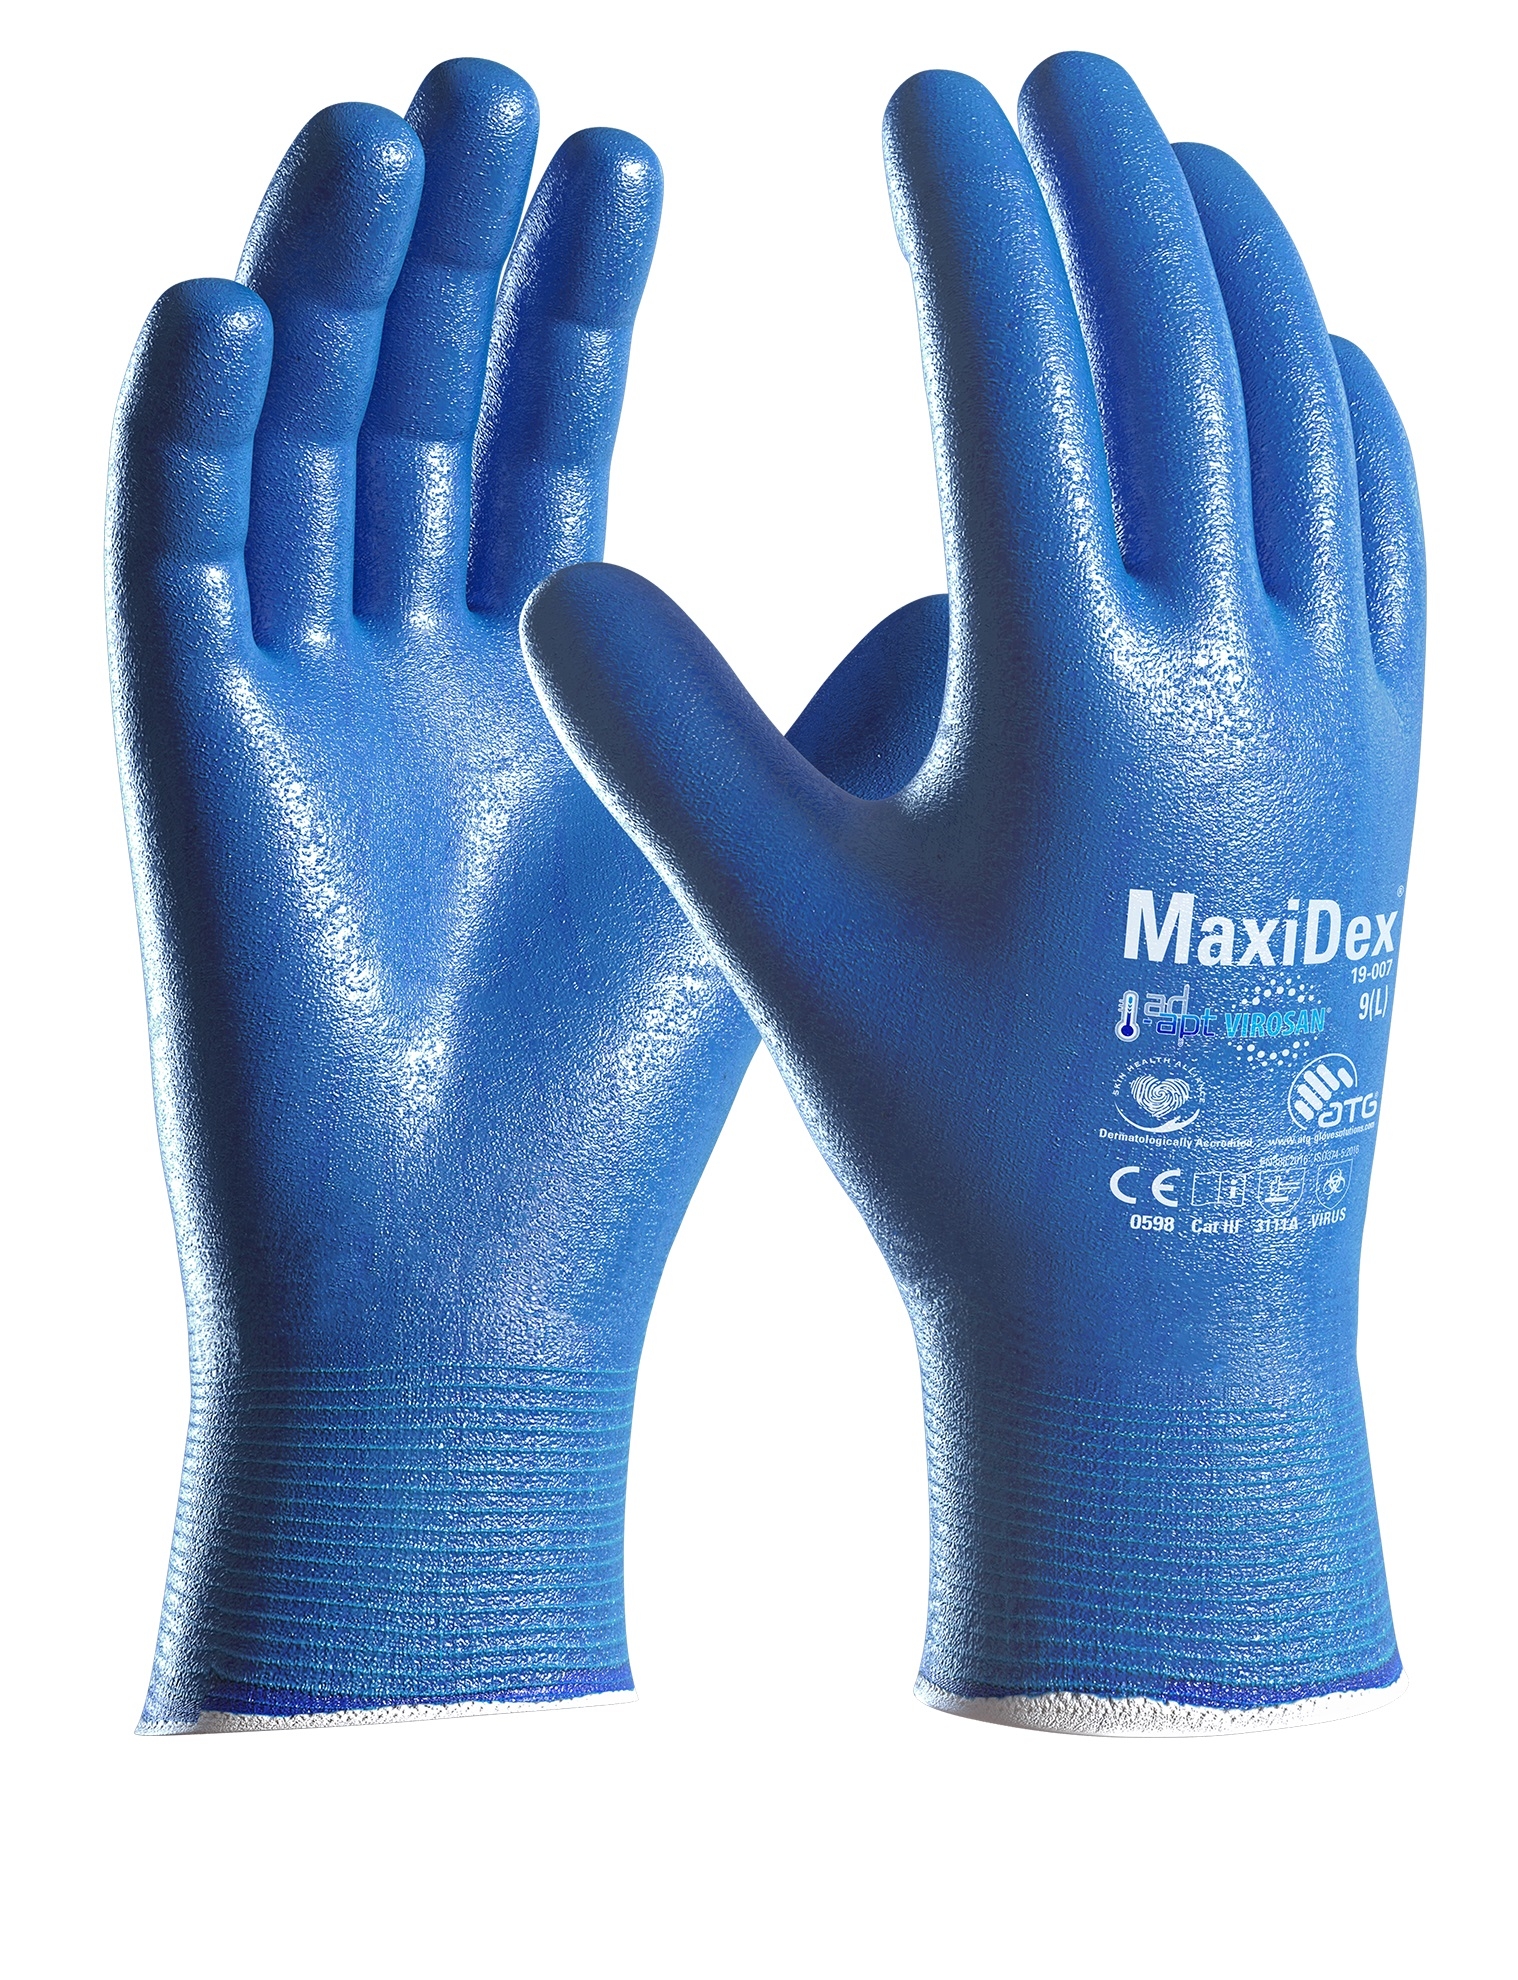 MaxiDex® Handschuhe (19-007) in Blau, Größe 10